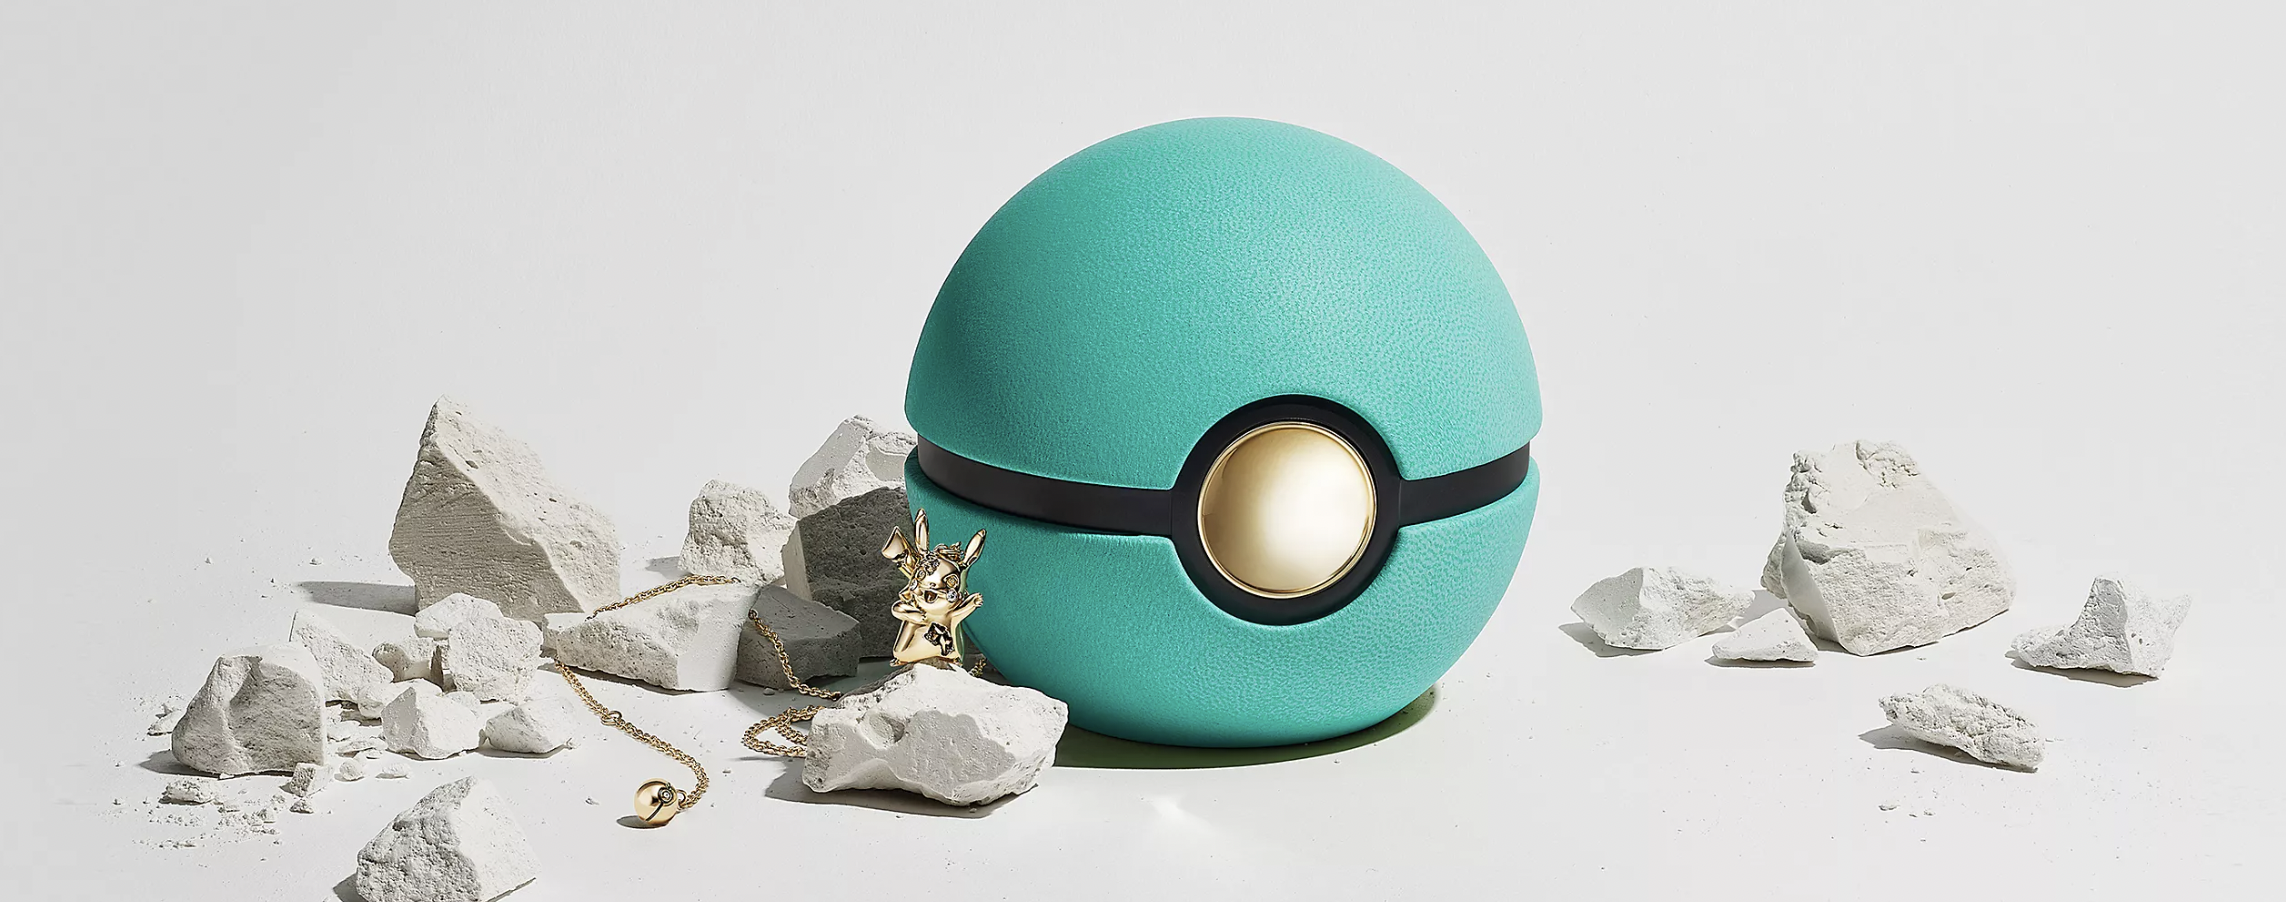 La coleción de Tiffany & Co. que rinde tributo a Pokémon